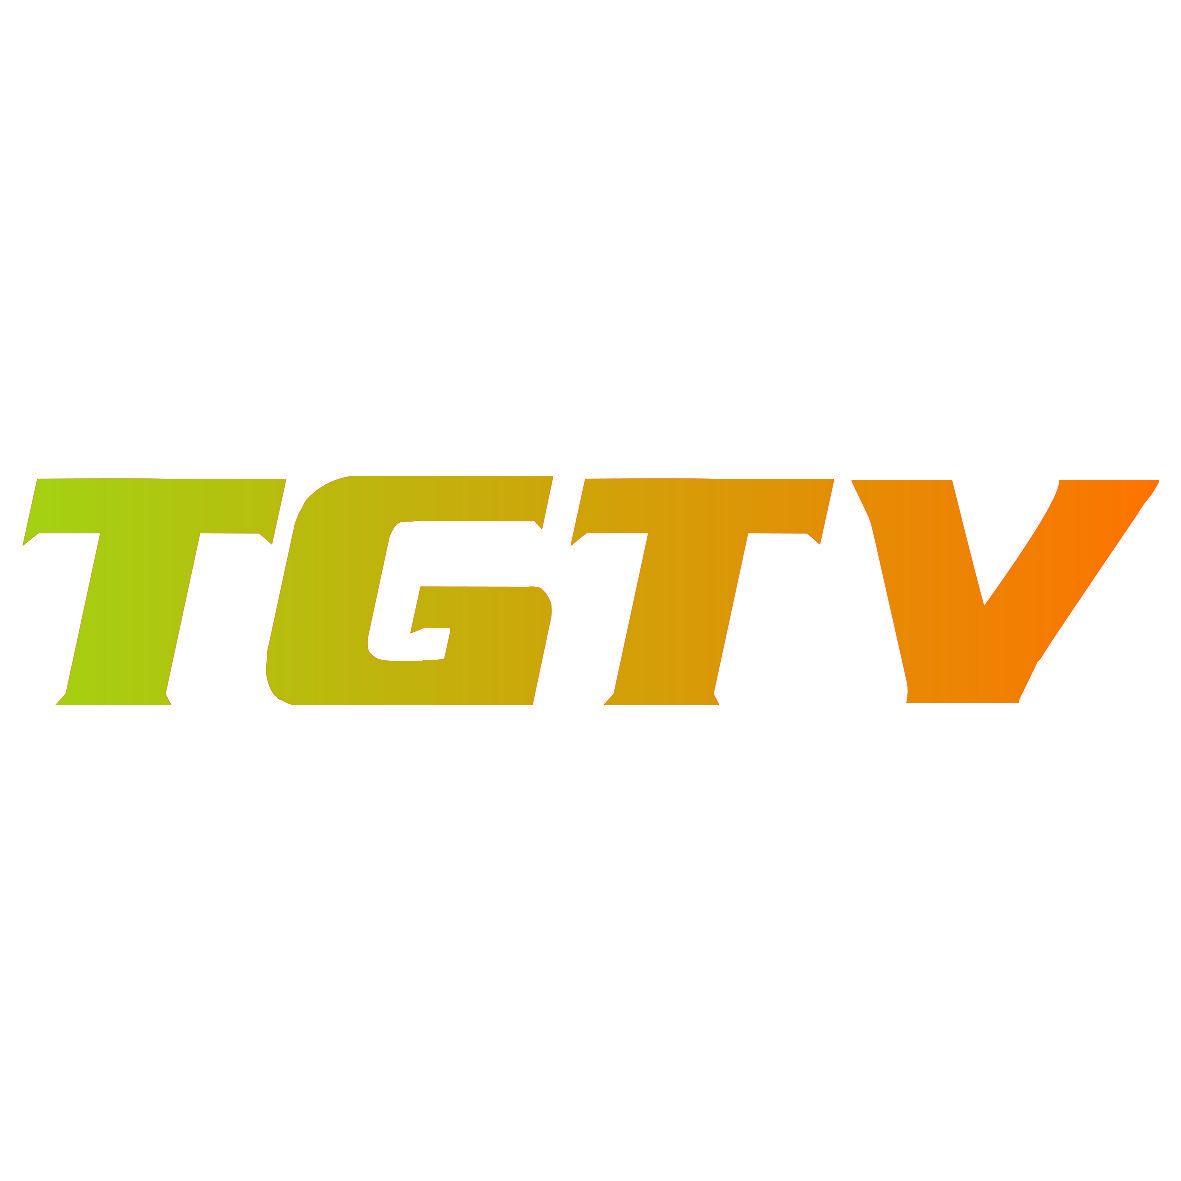 TGTV